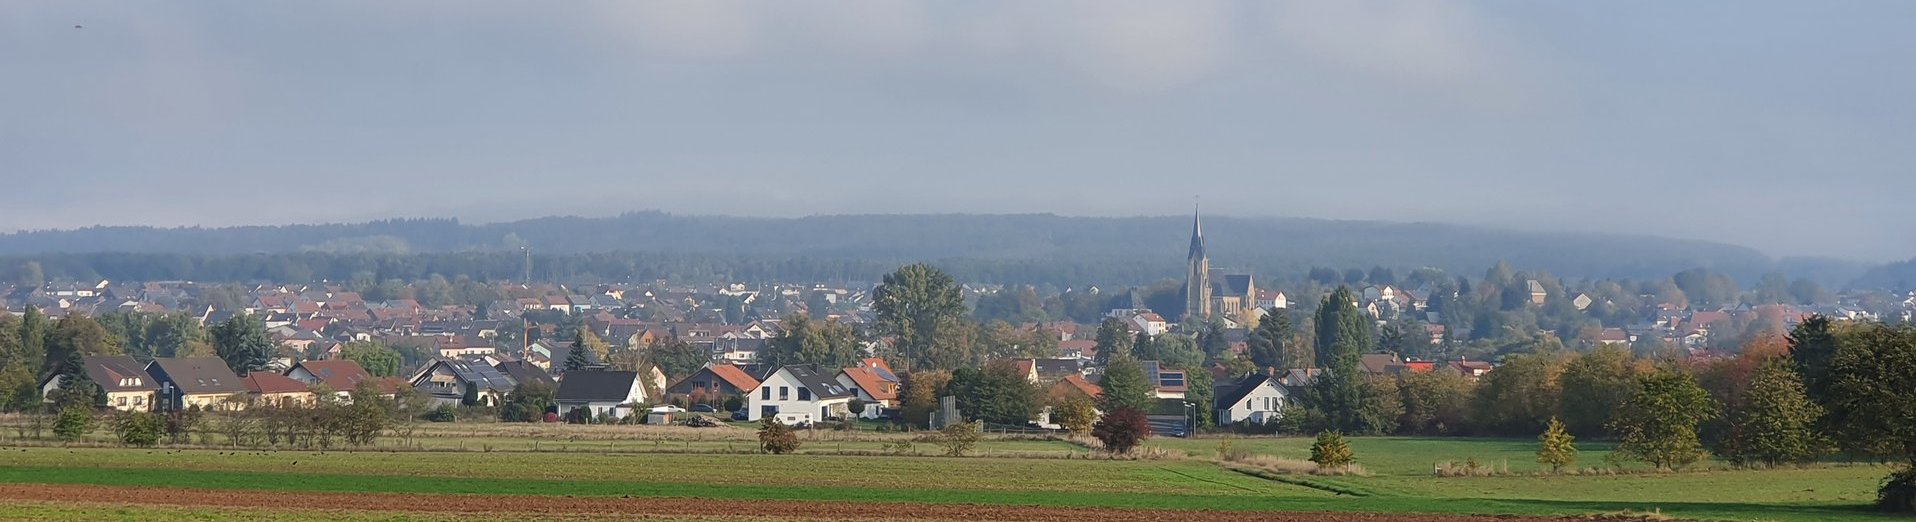 Landschaftsaufnahme von Saarwellingen